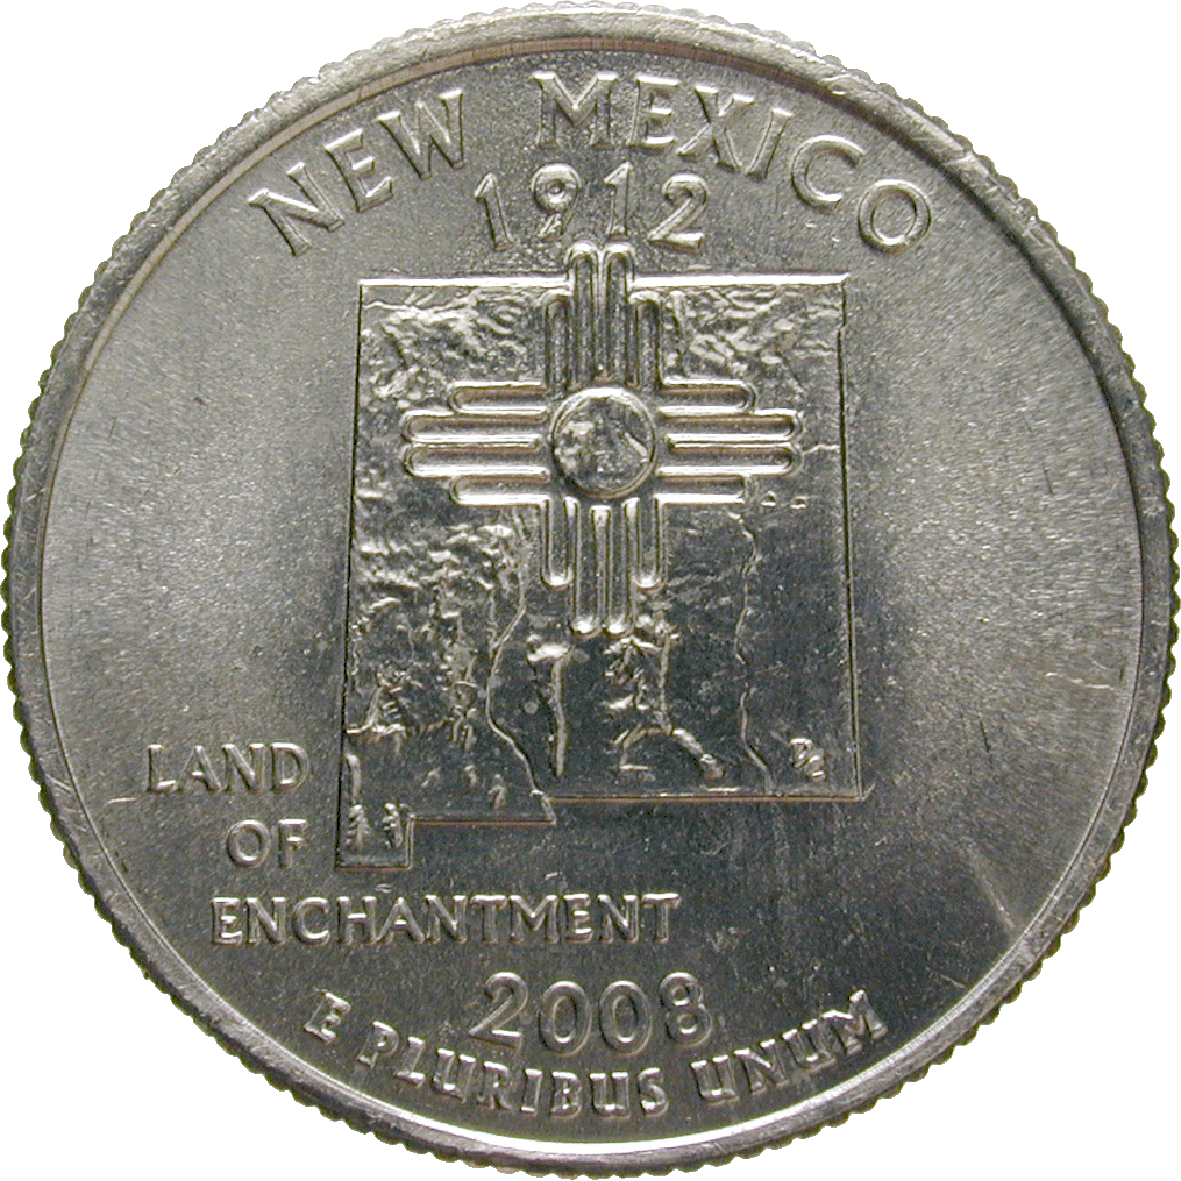 Vereinigte Staaten von Amerika, Quarter Dollar 2008 (reverse)